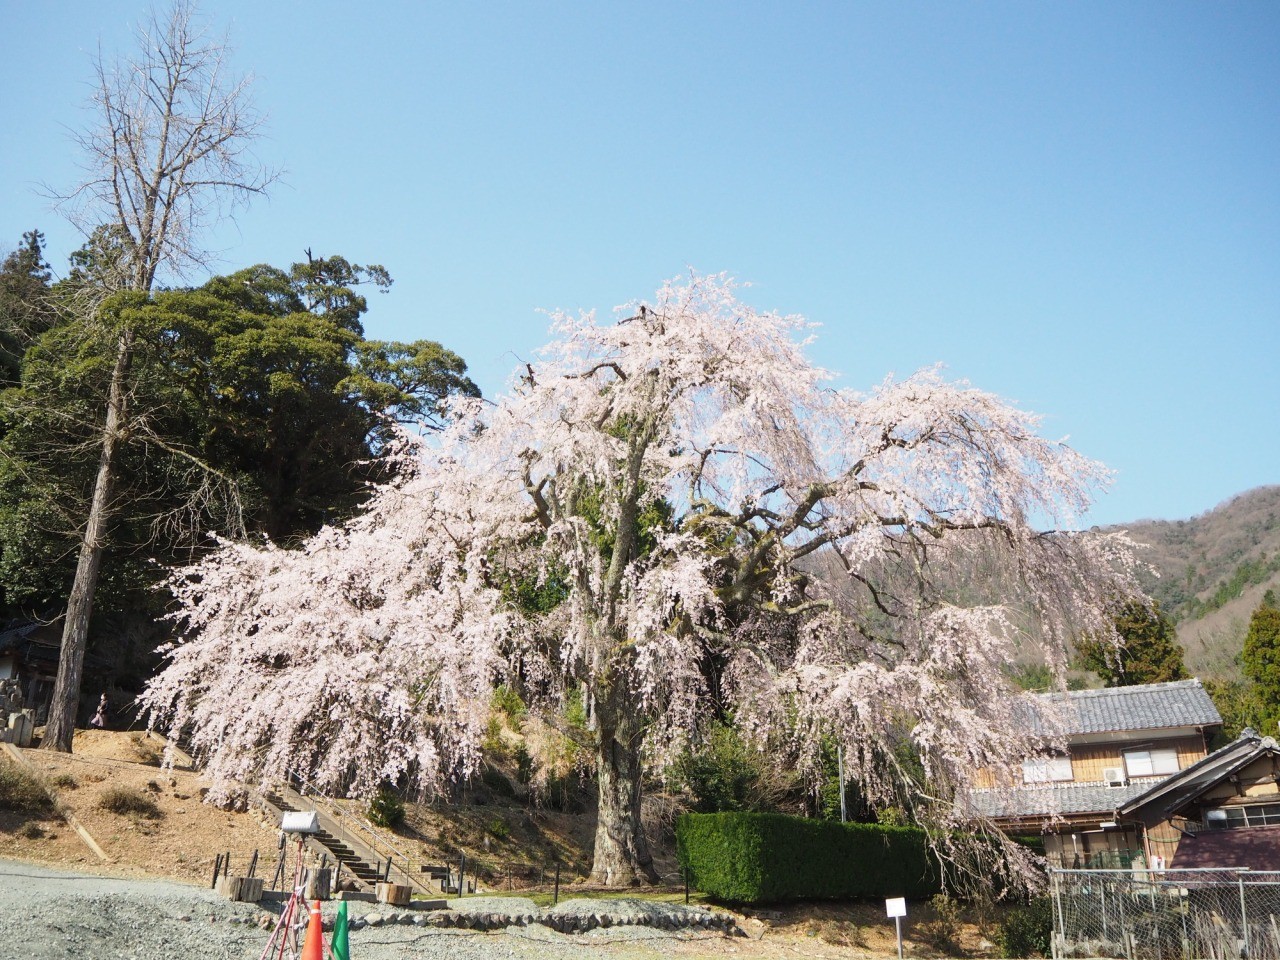 妙祐寺のしだれ桜 観光スポット 公式 福井県 観光 旅行サイト ふくいドットコム